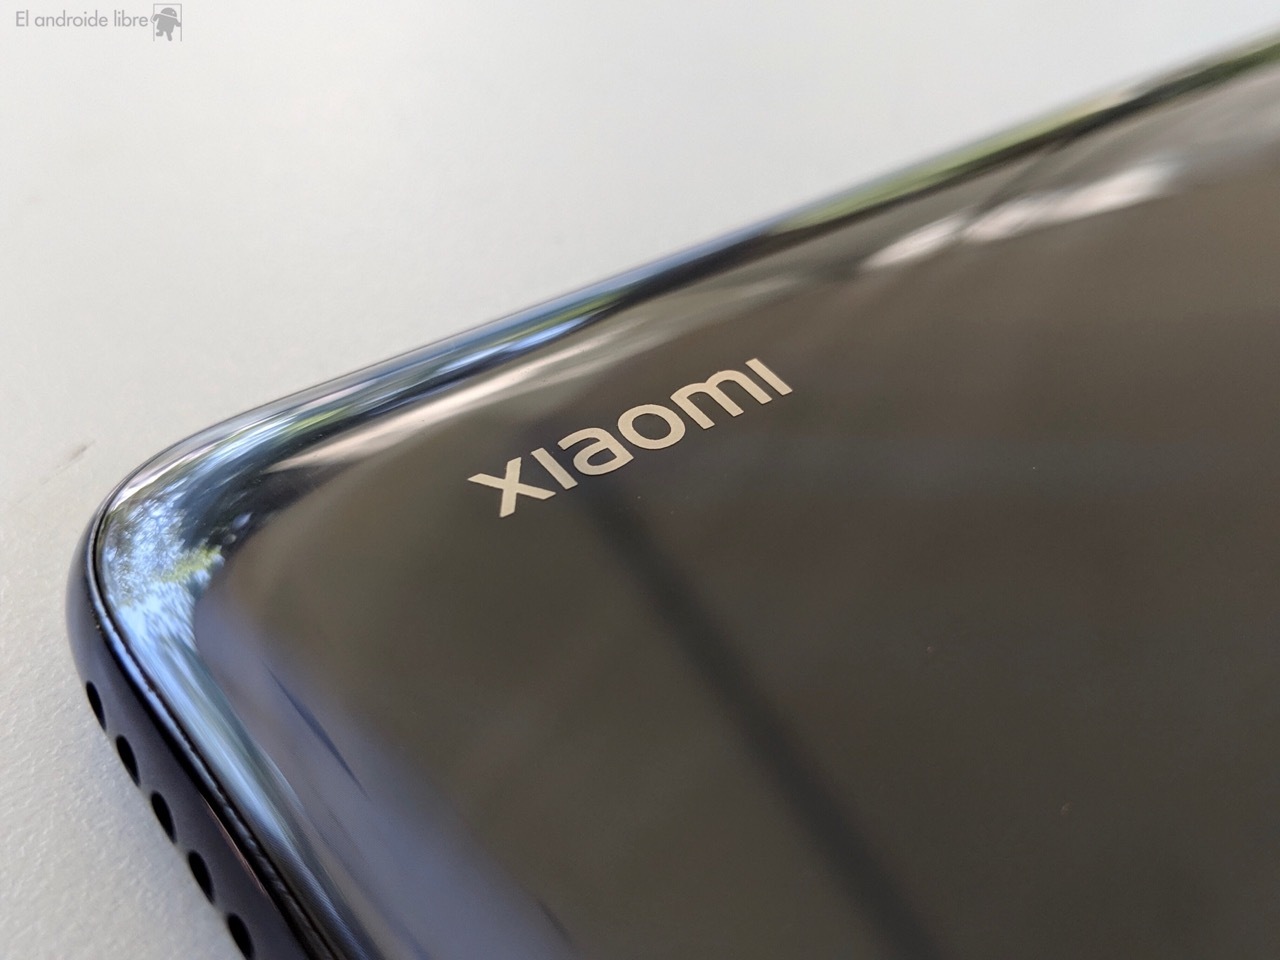 Entendiendo el lío de móviles Xiaomi: un poco de orden en el amplio (y  caótico) catálogo de Xiaomi en España